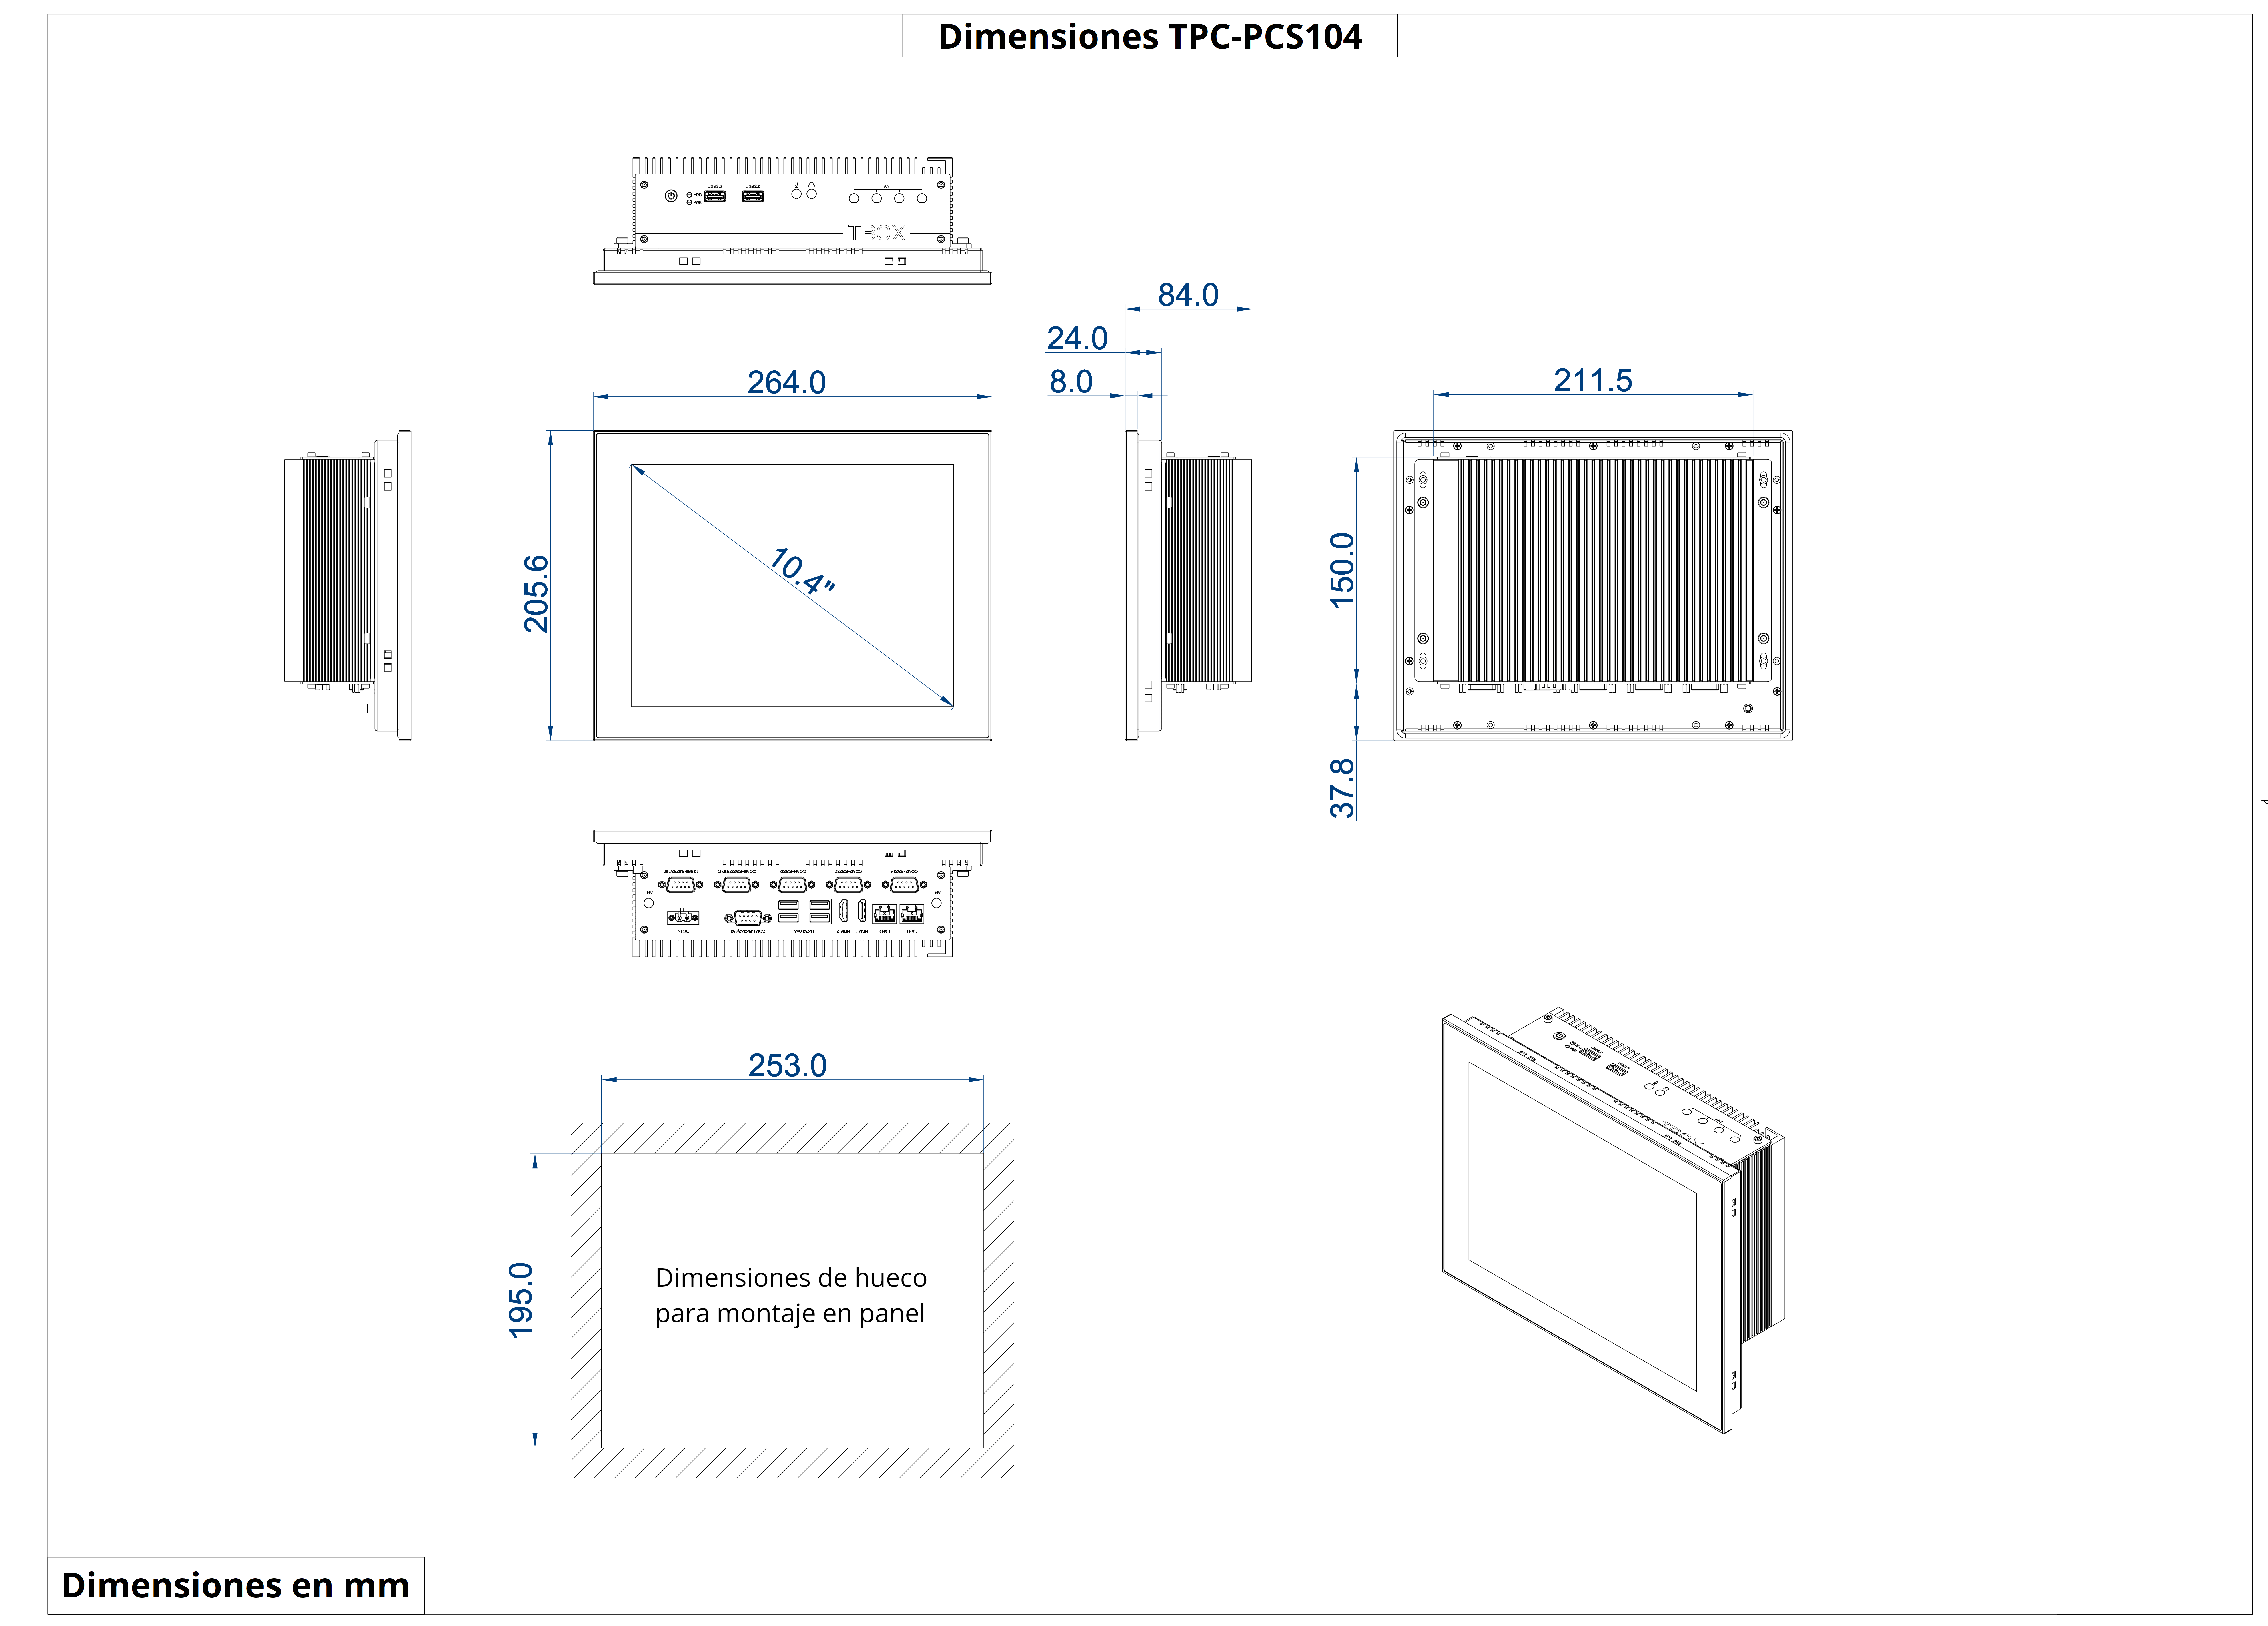 Dimensiones del producto TPC-PCS104